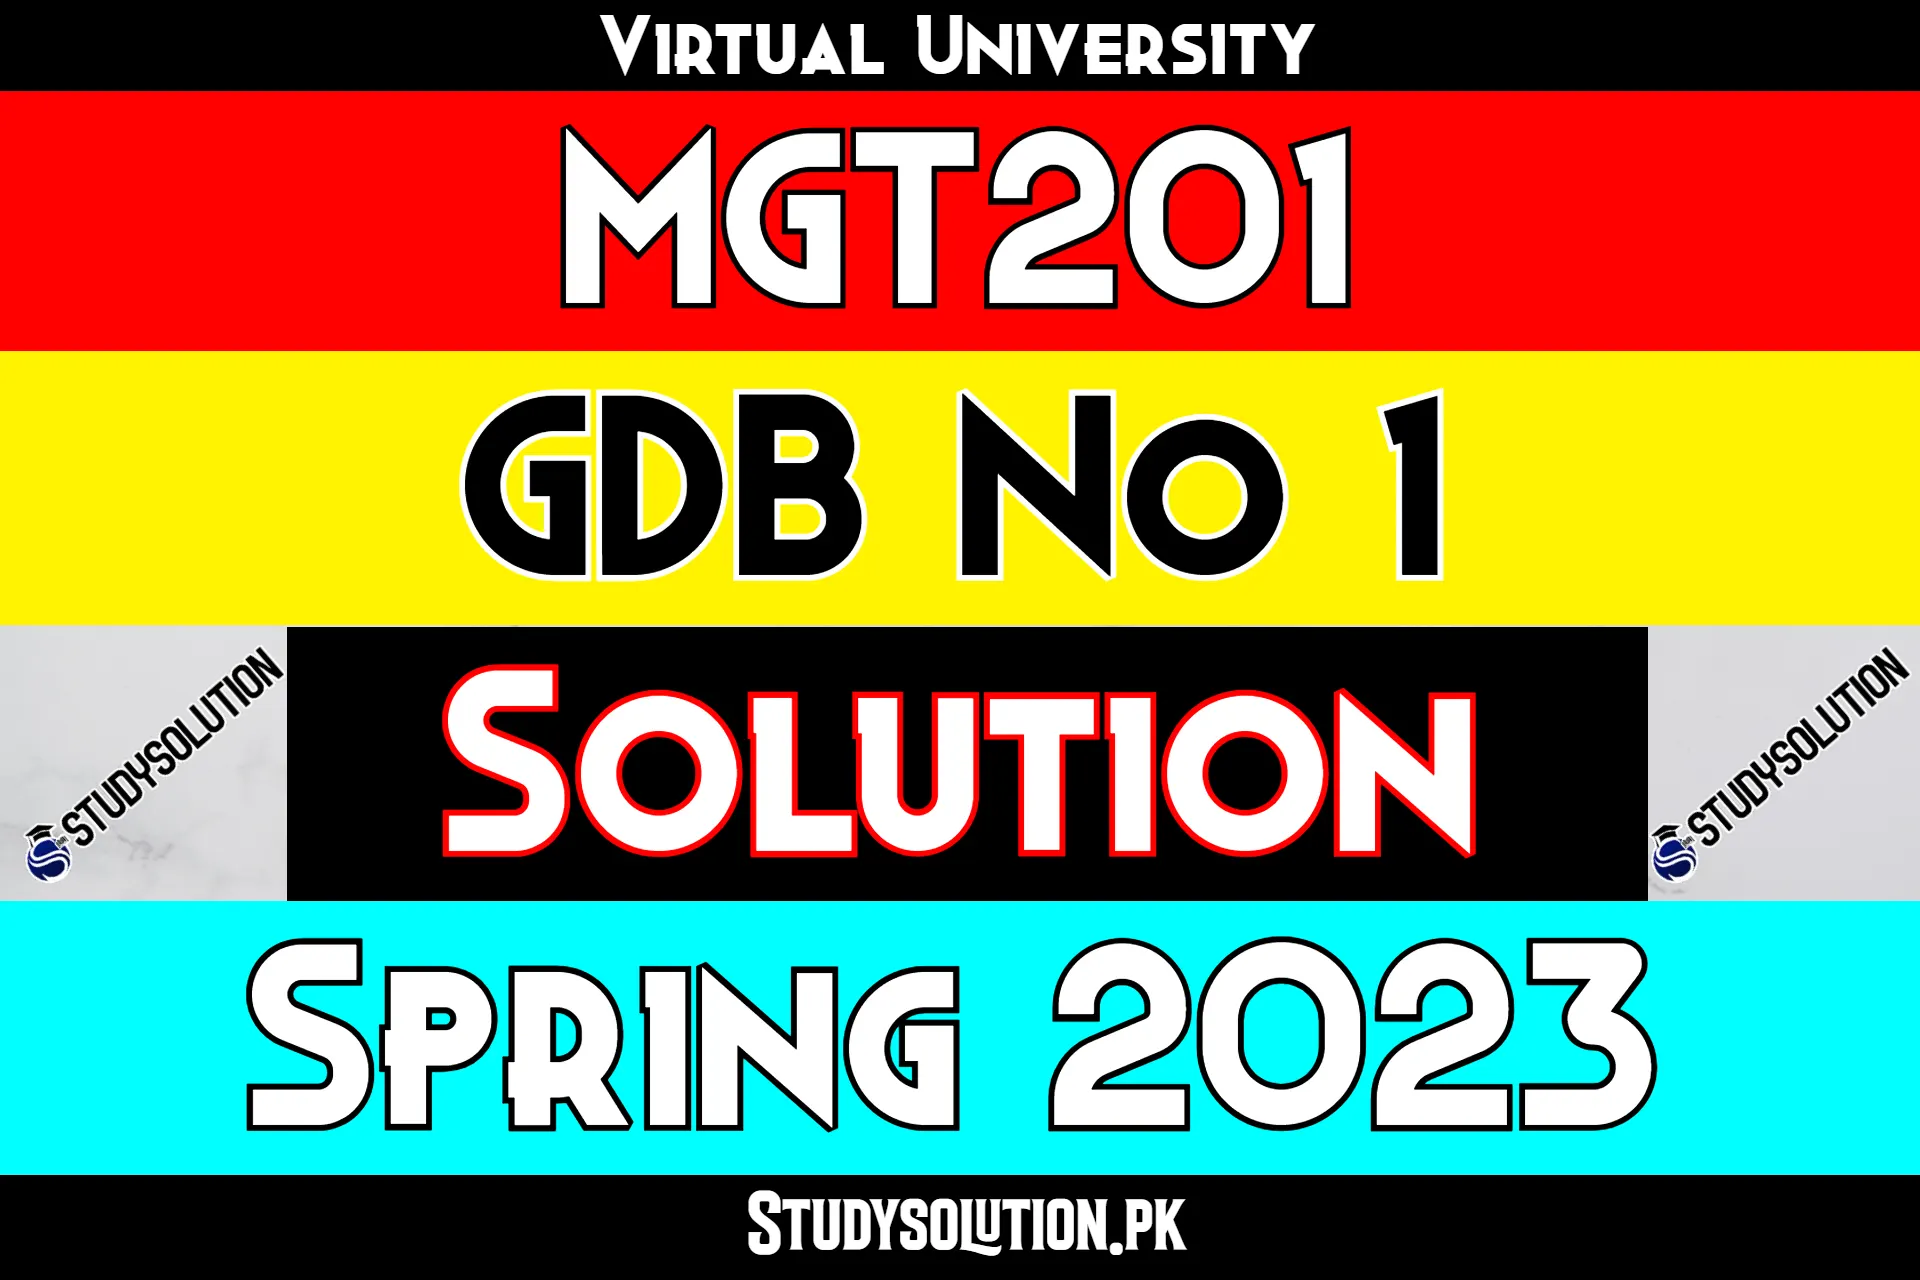 MGT201 GDB No 1 Solution Spring 2023